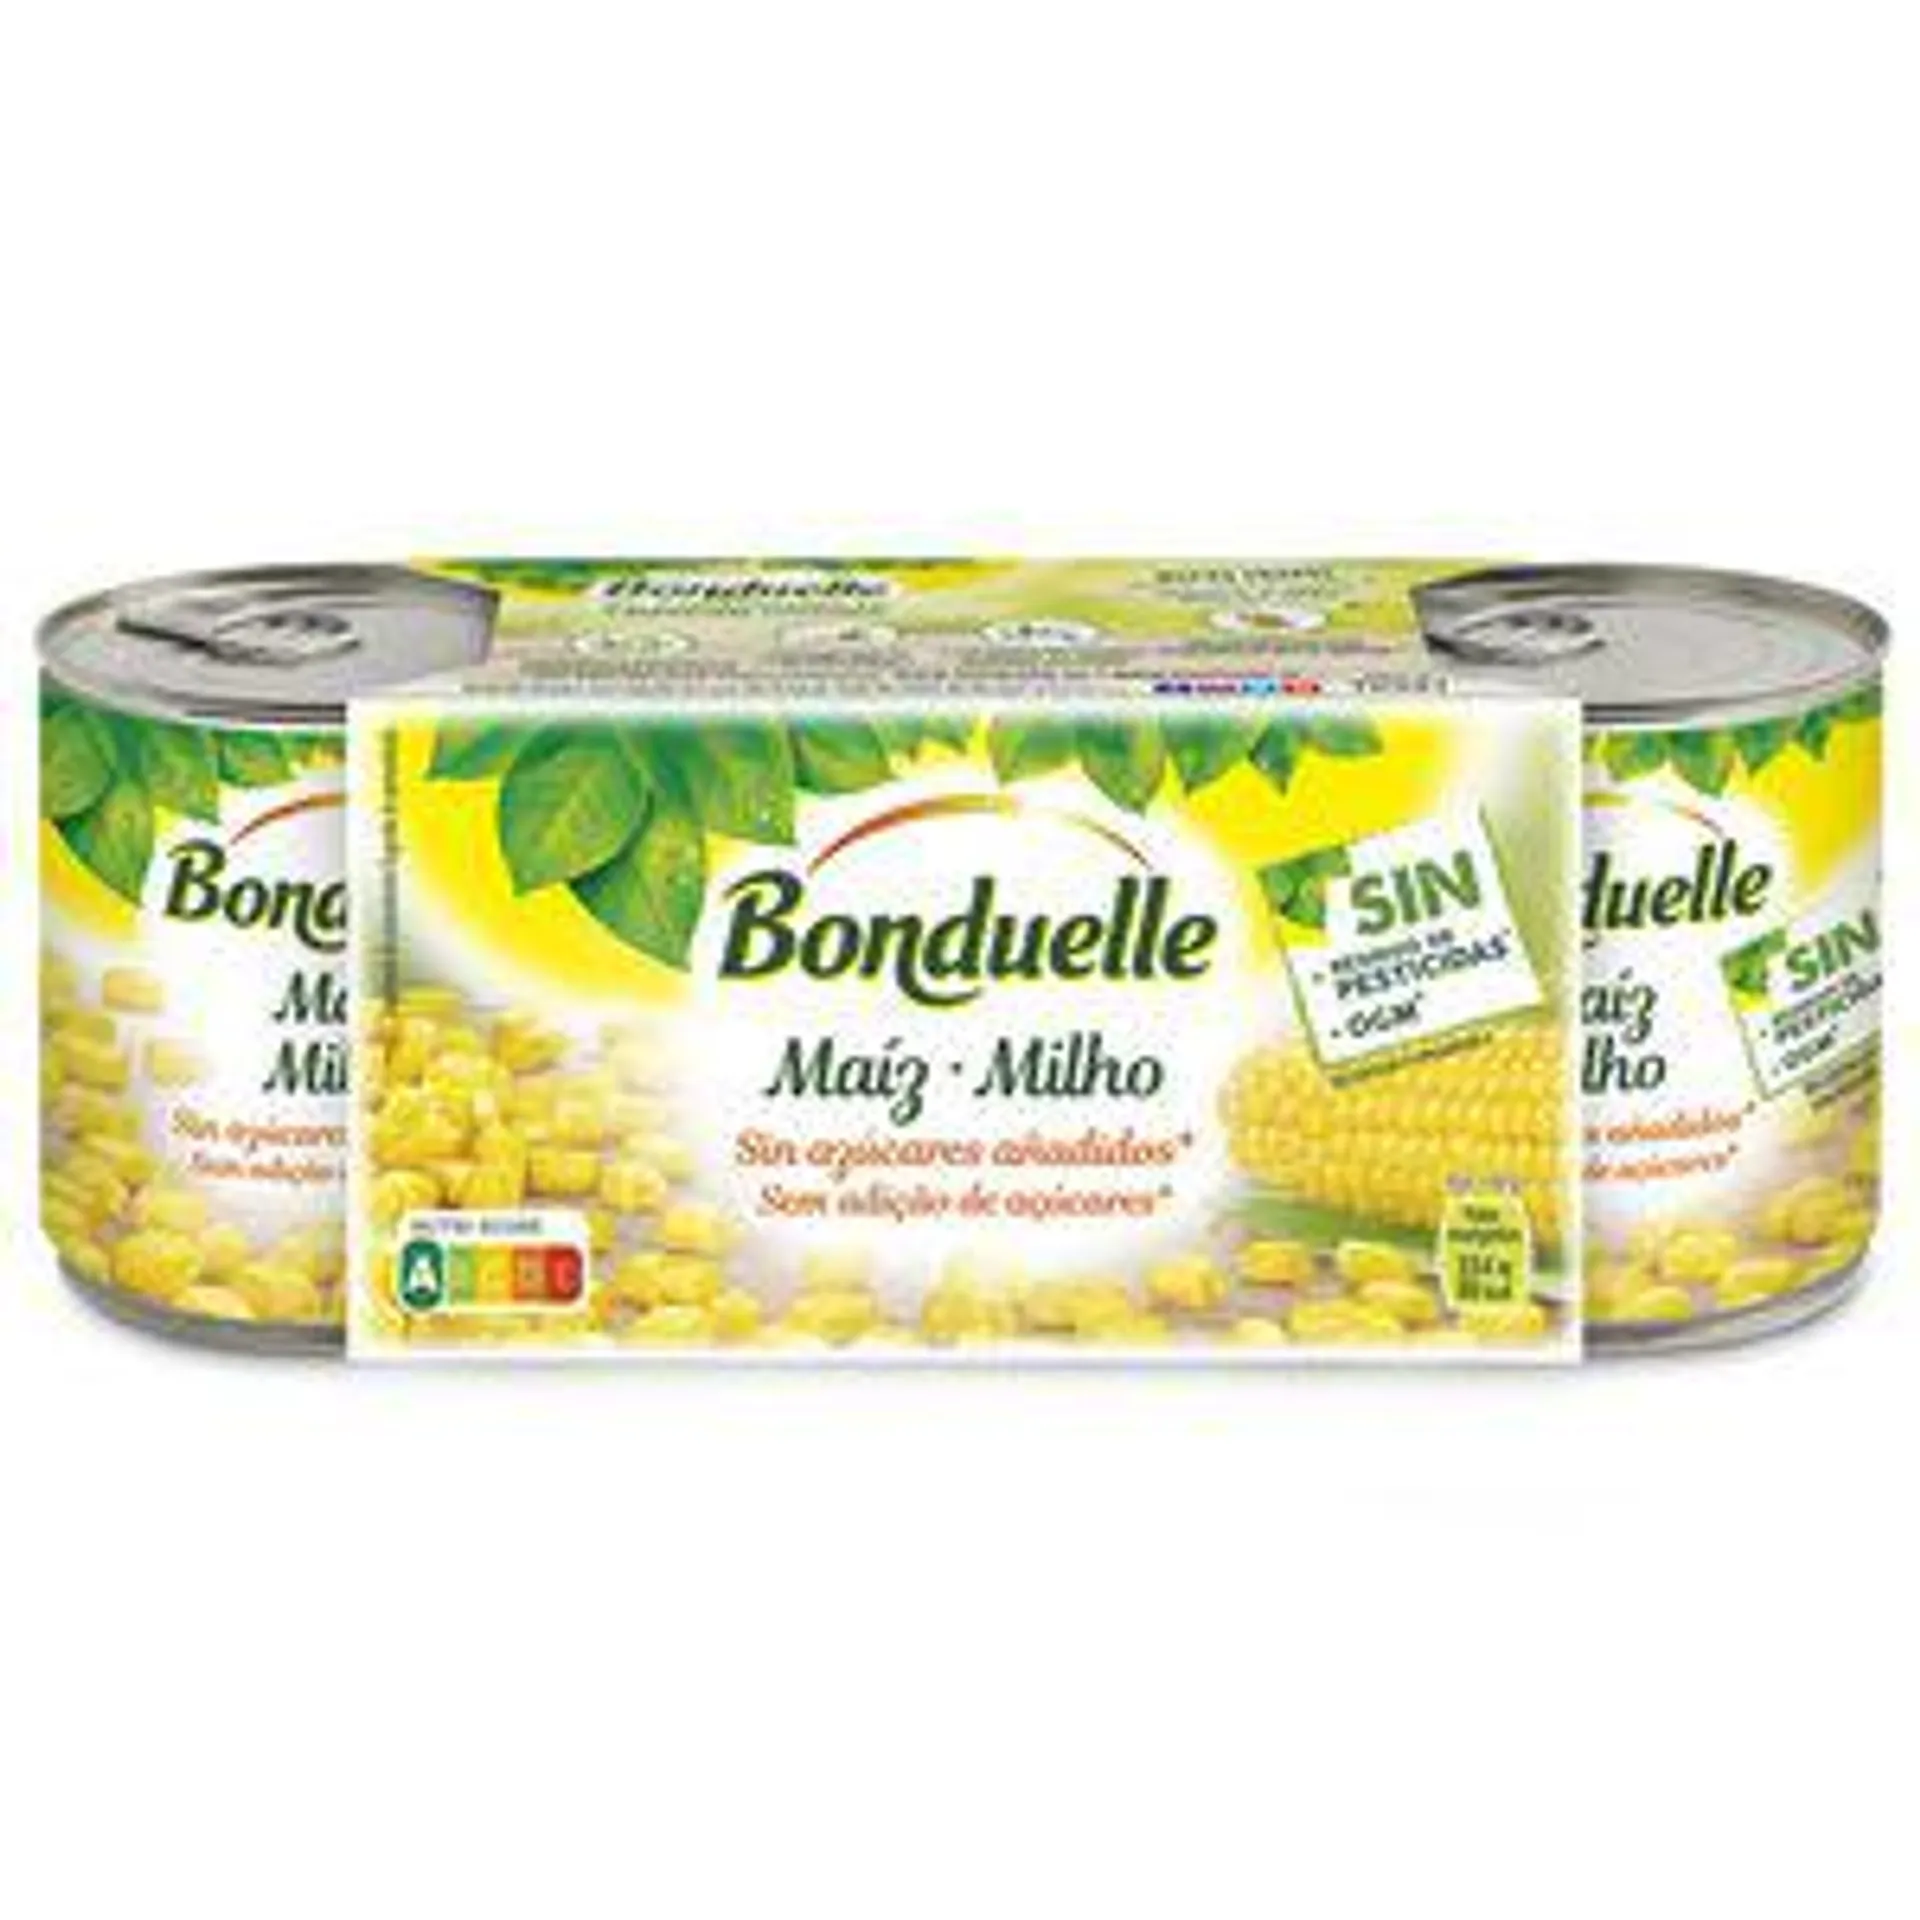 BONDUELLE maíz dulce pack 3 latas 420 gr